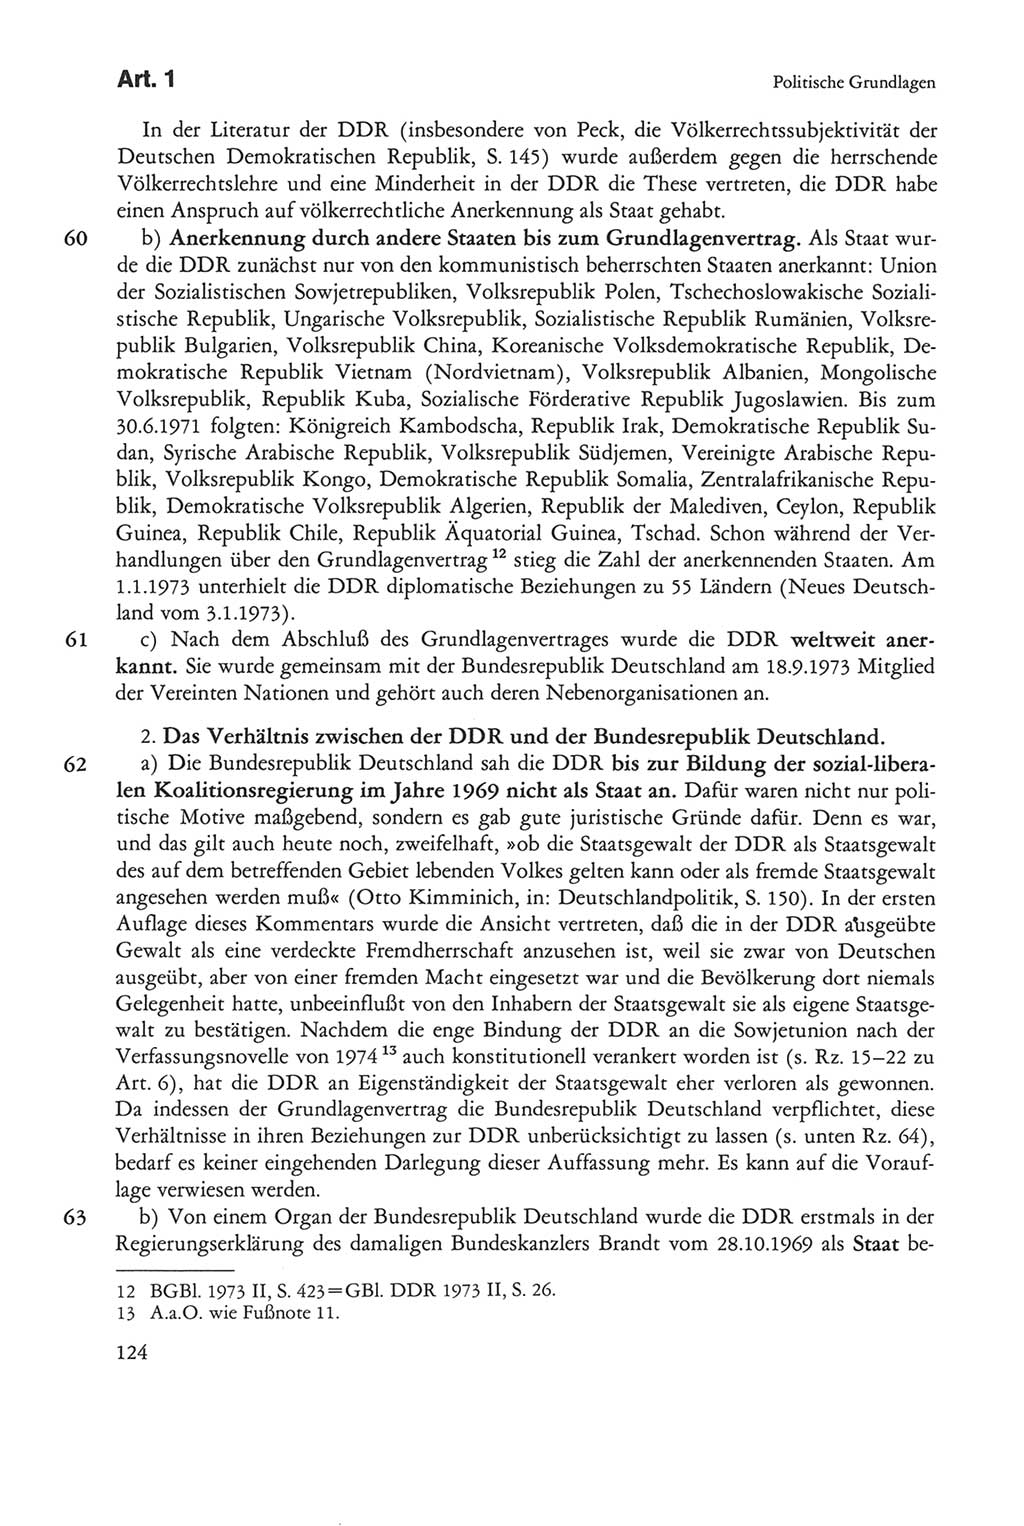 Die sozialistische Verfassung der Deutschen Demokratischen Republik (DDR), Kommentar 1982, Seite 124 (Soz. Verf. DDR Komm. 1982, S. 124)